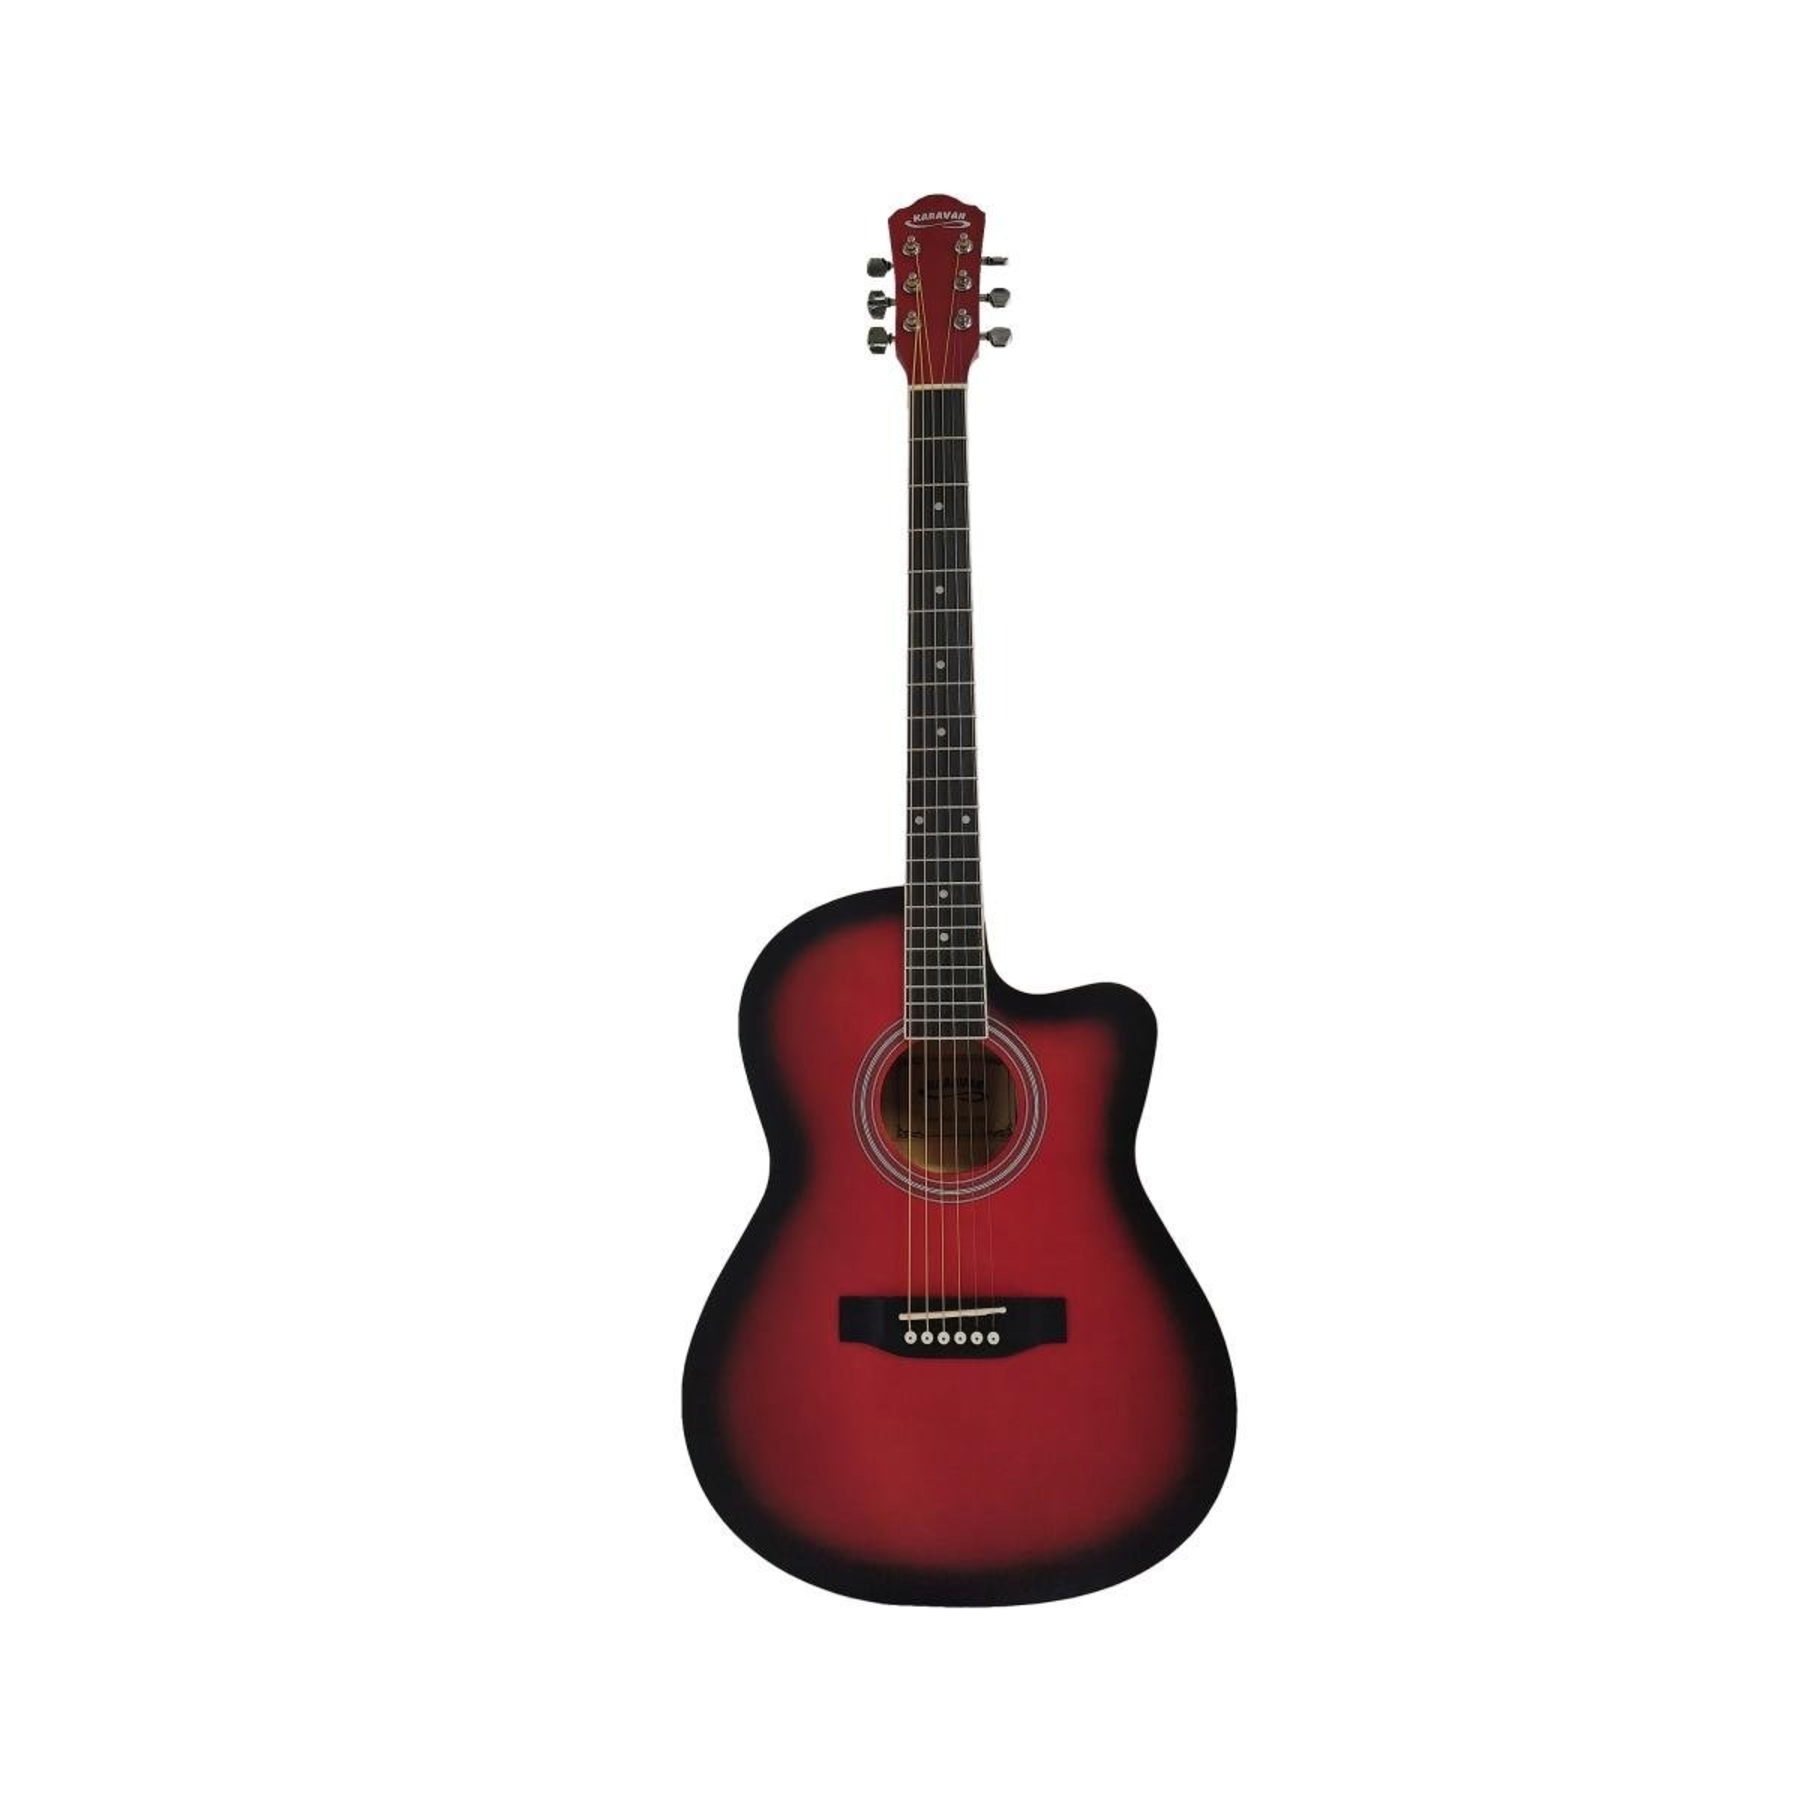 Акустические гитары Caravan K-3911 RD гитара акустическая санберст 97см с вырезом